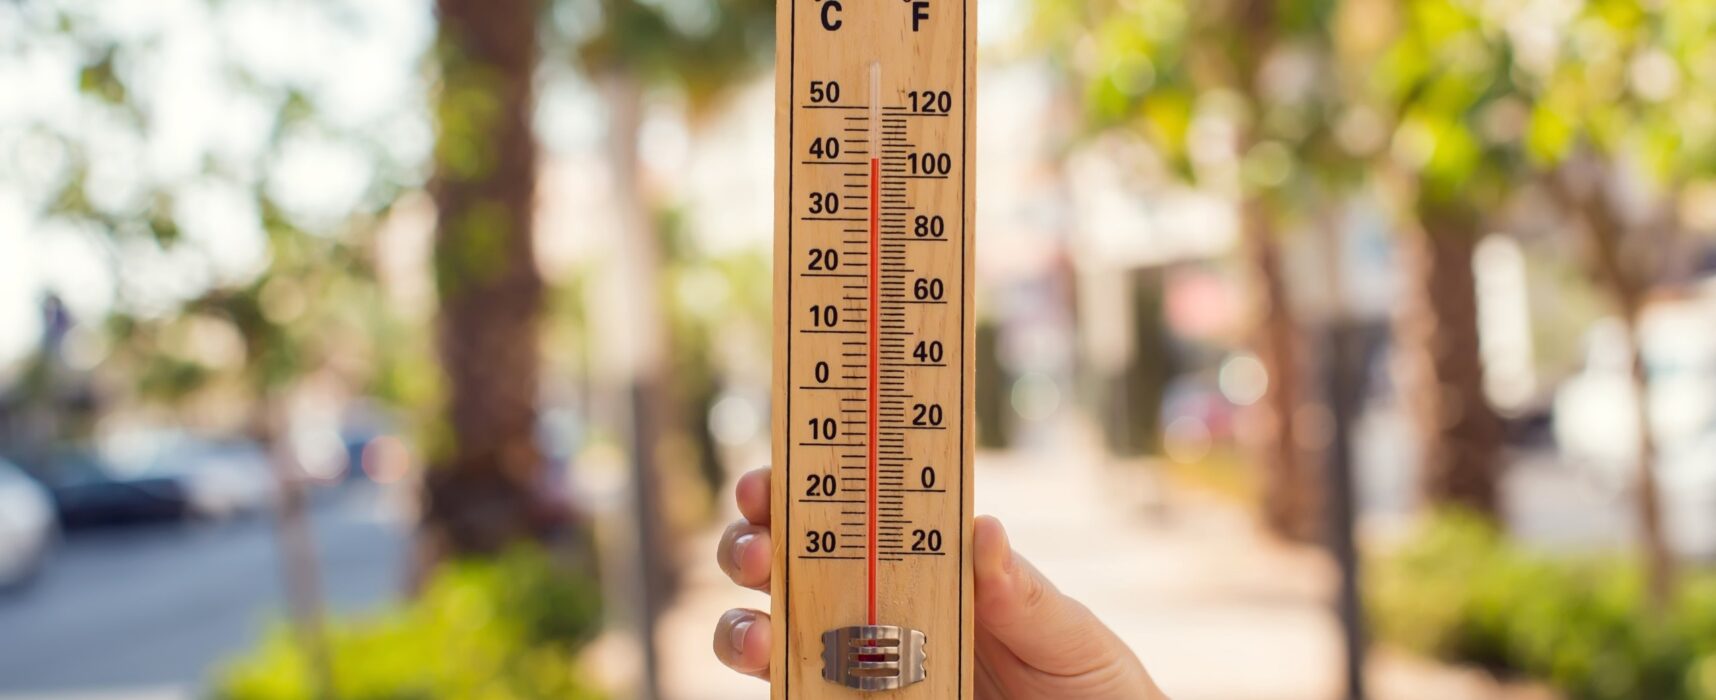 Protezione Civile Puglia, ondate di calore fino a 37° nei prossimi giorni / DETTAGLI